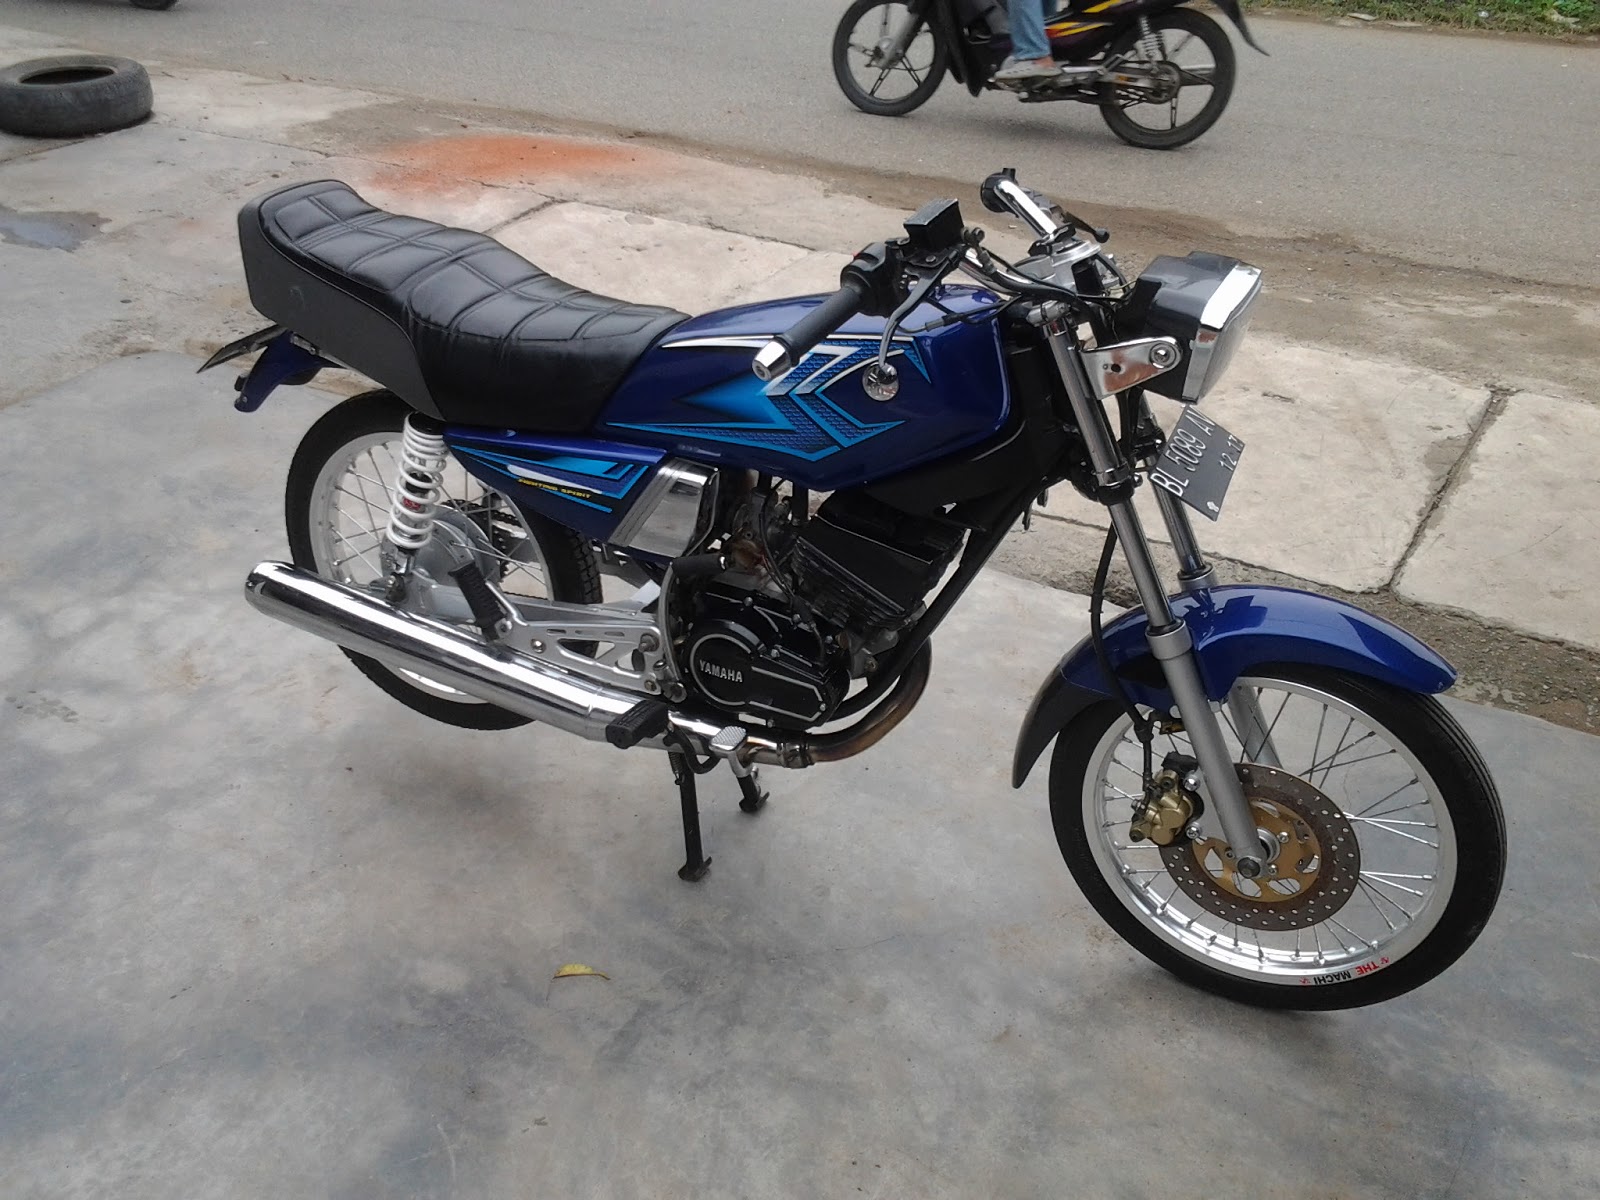  Harga Motor Bekas  Aceh inginmotor